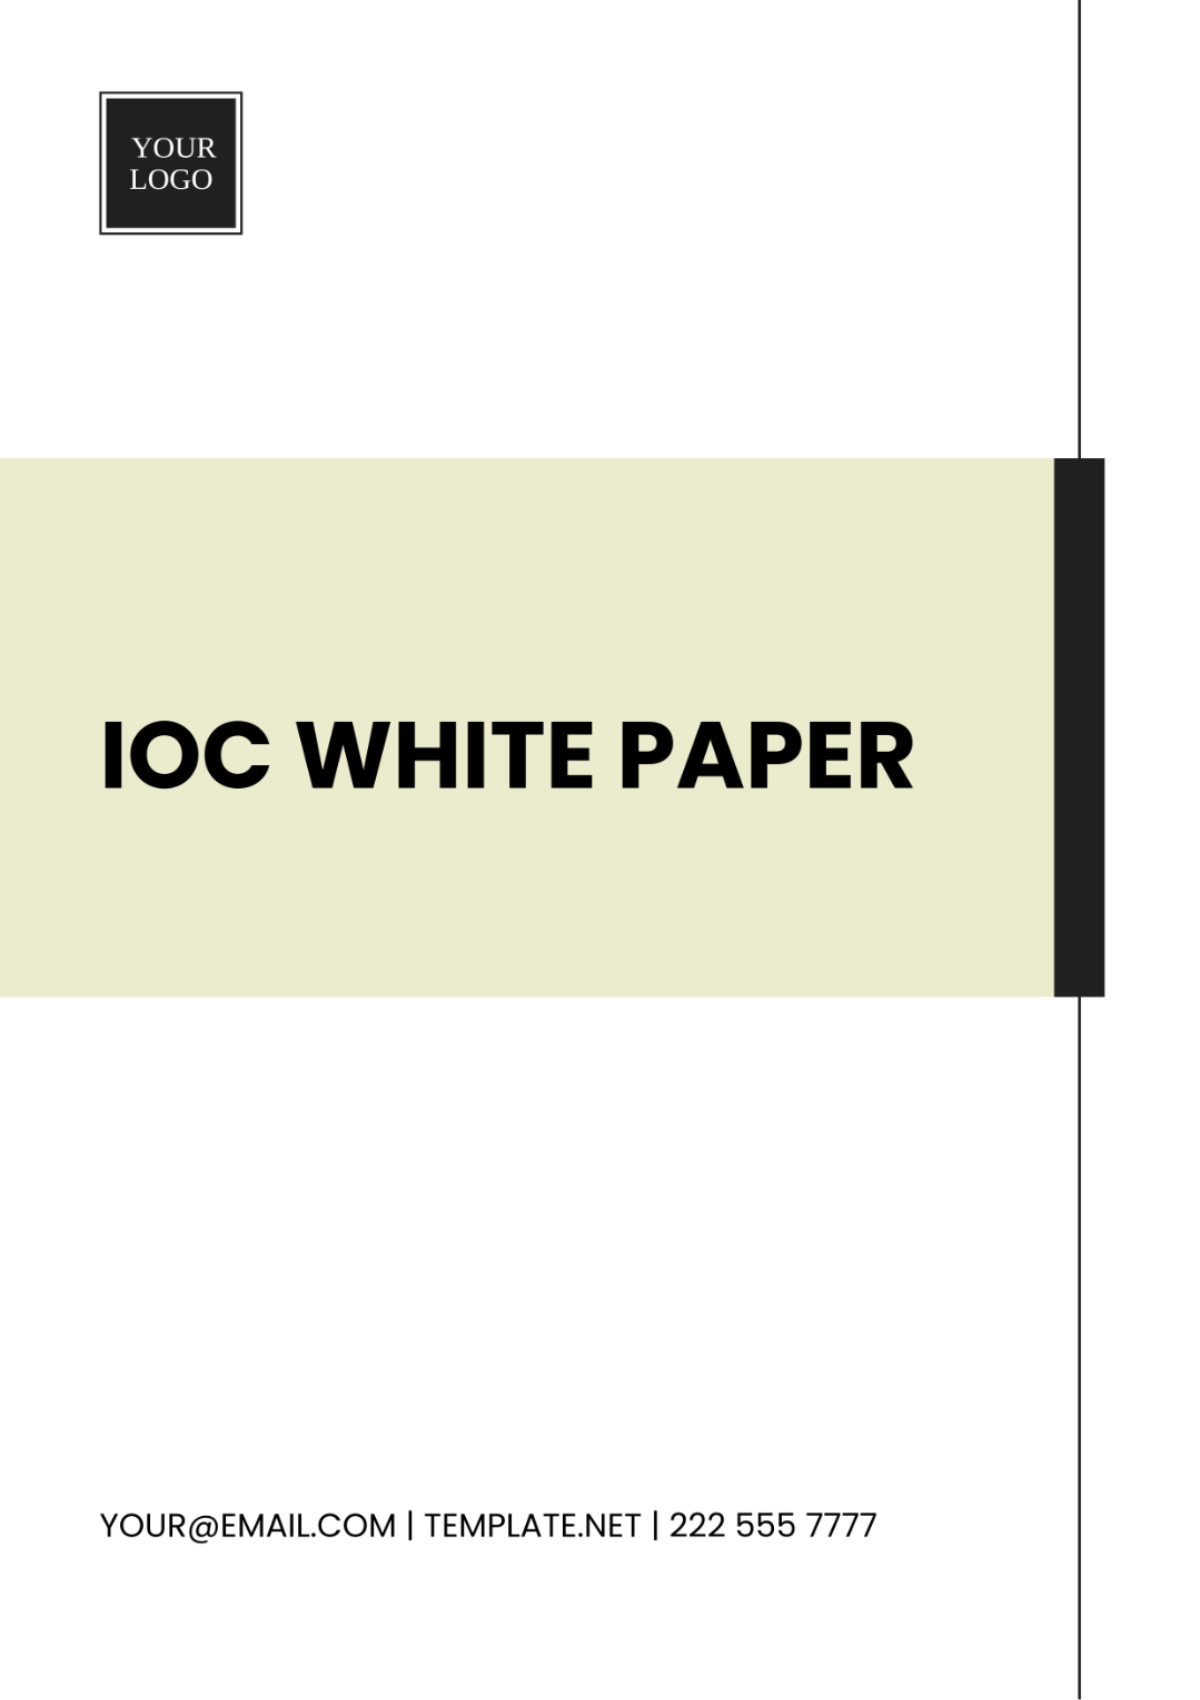 IOC White Paper Template